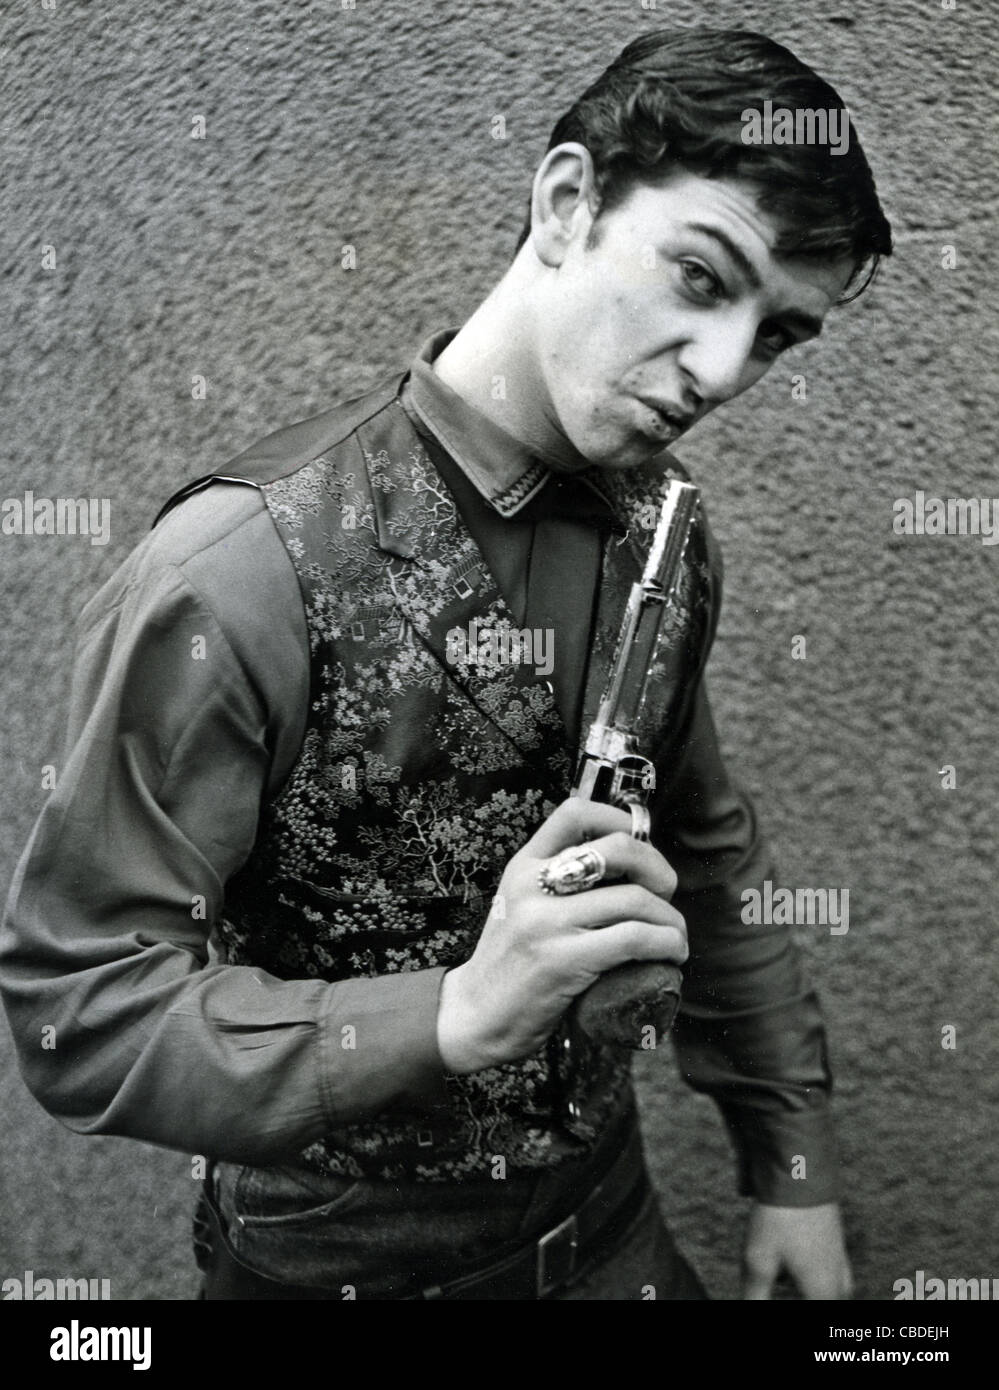 DUFFY POWER UK blues et rock singer à son accueil à propos 1960 Fulham Banque D'Images